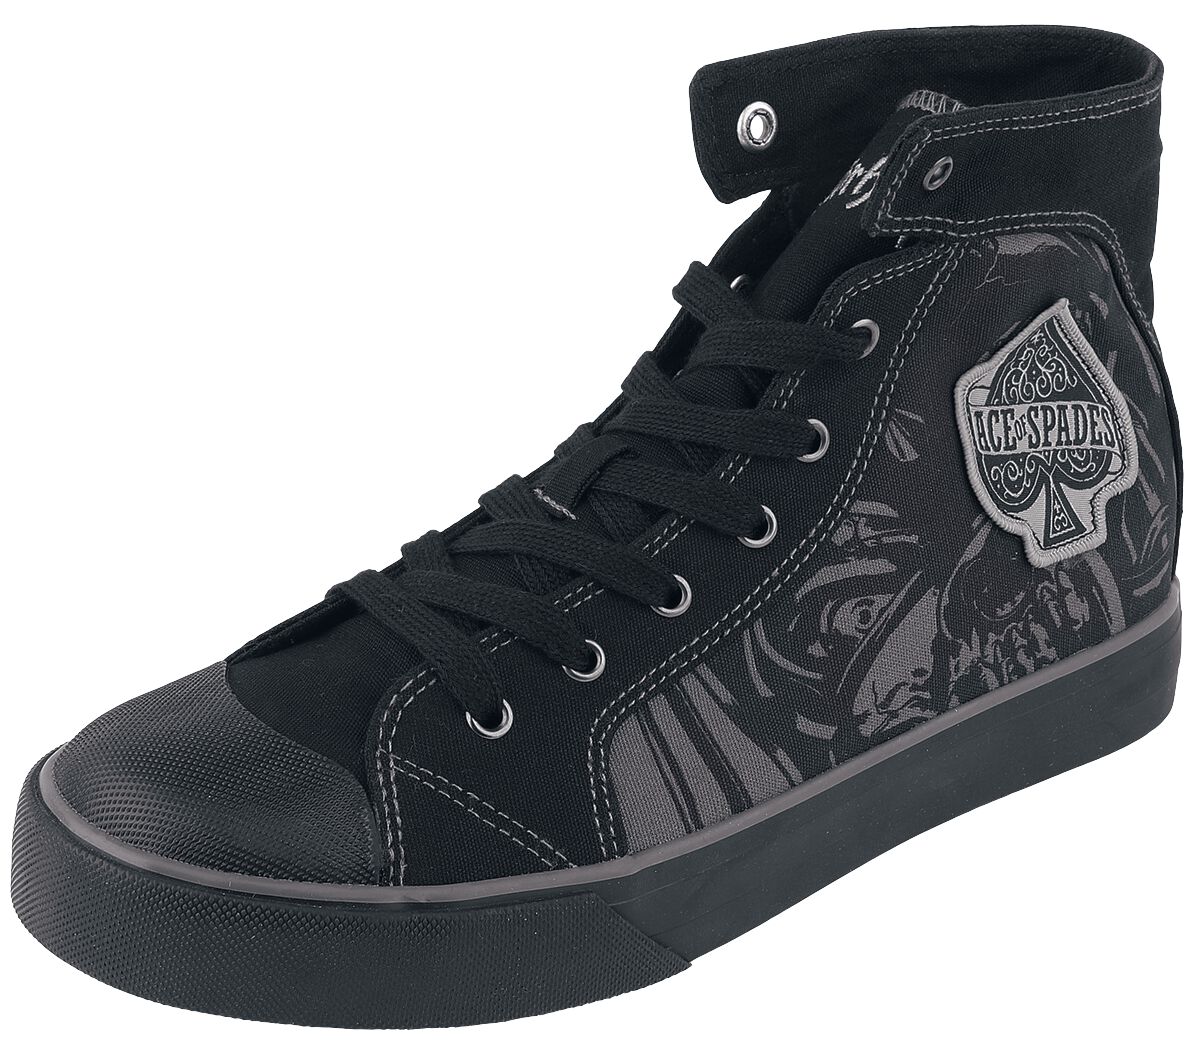 Motörhead Sneaker high - EMP Signature Collection - EU37 bis EU38 - Größe EU38 - schwarz  - EMP exklusives Merchandise!